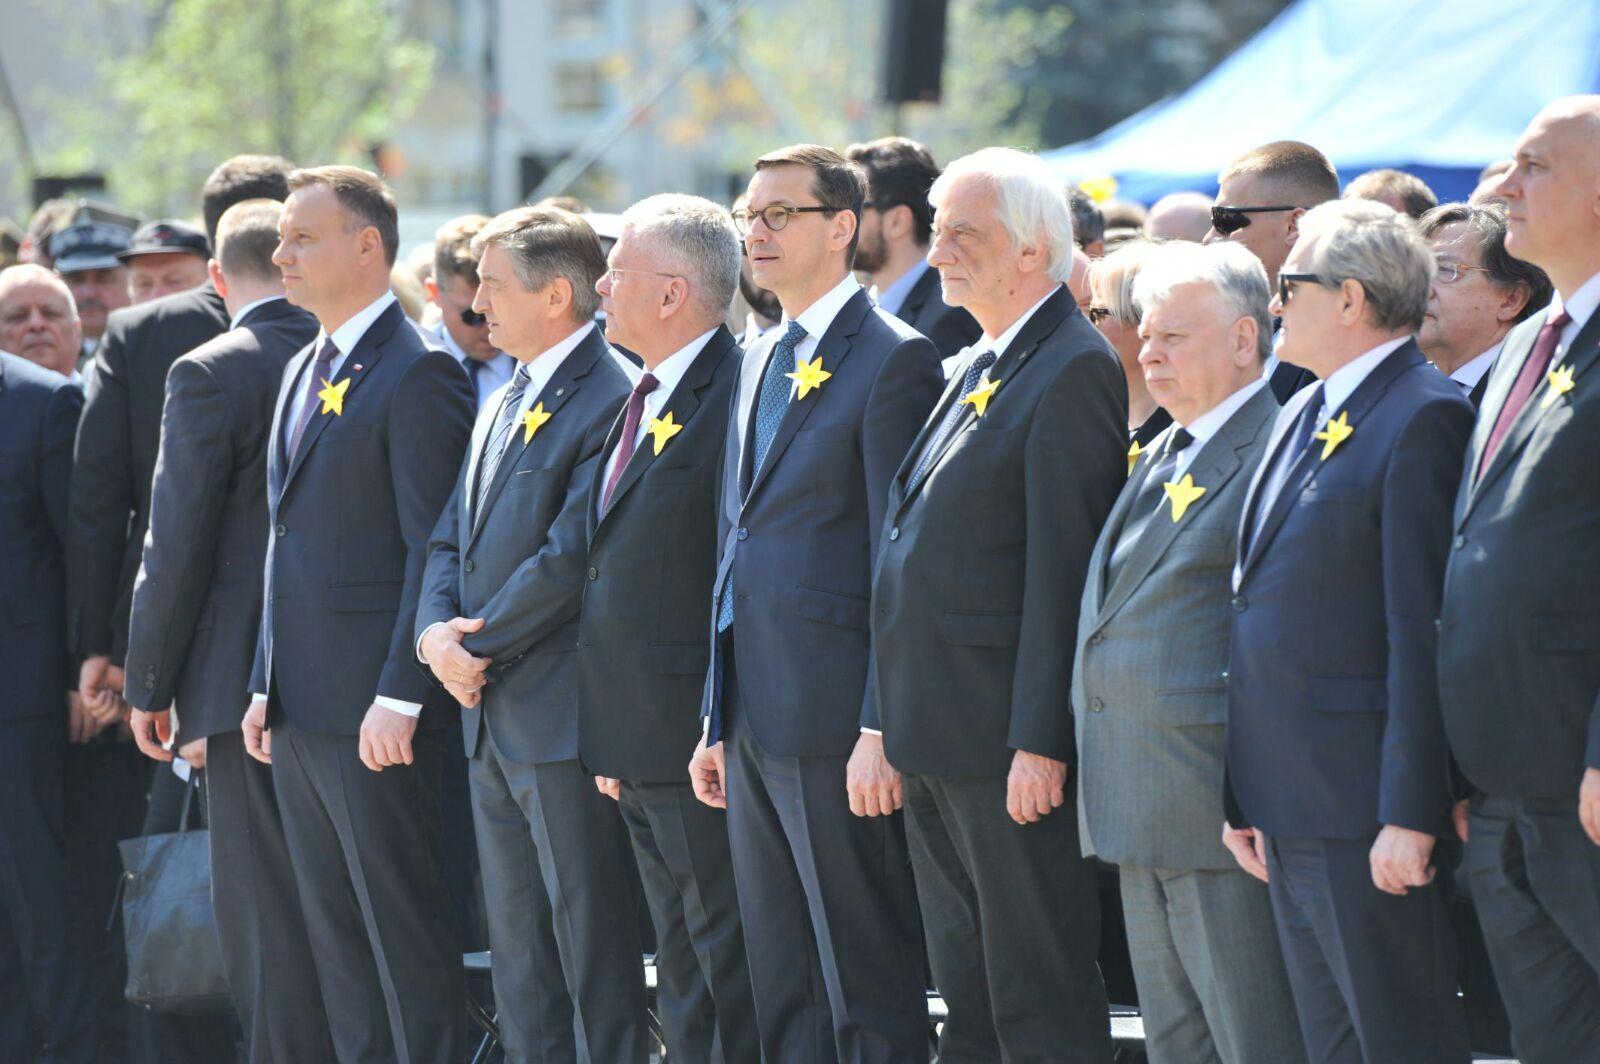 Prezydent Andrzej Duda, Marszałek Marek Kuchciński, Marszałek Stanisław Karczewski, Premier Mateusz Morawiecki stoją obok siebie podczas uroczystości.